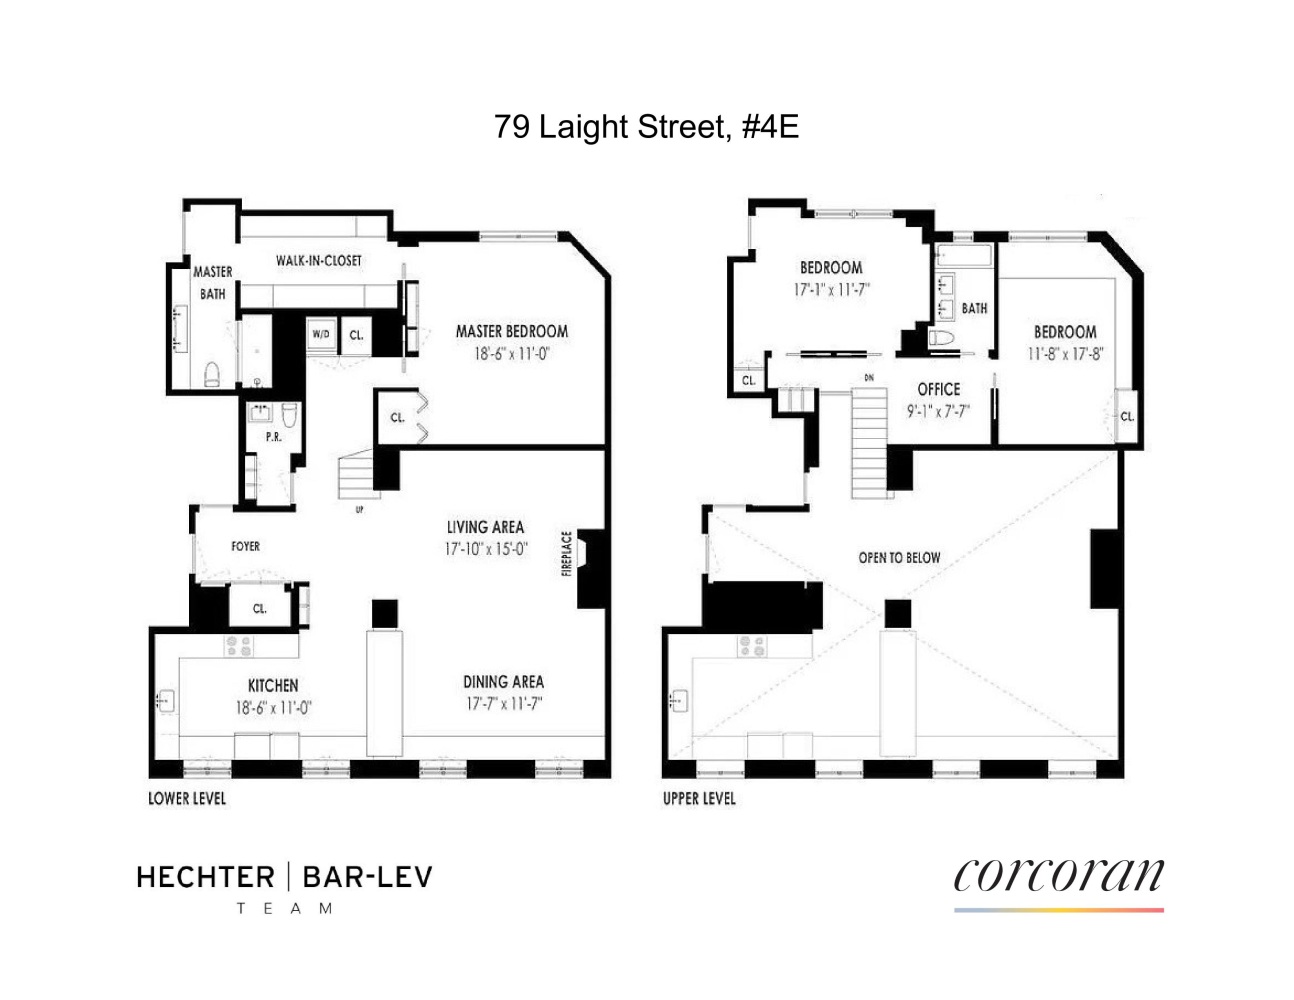 Floorplan for 79 Laight Street, 4E